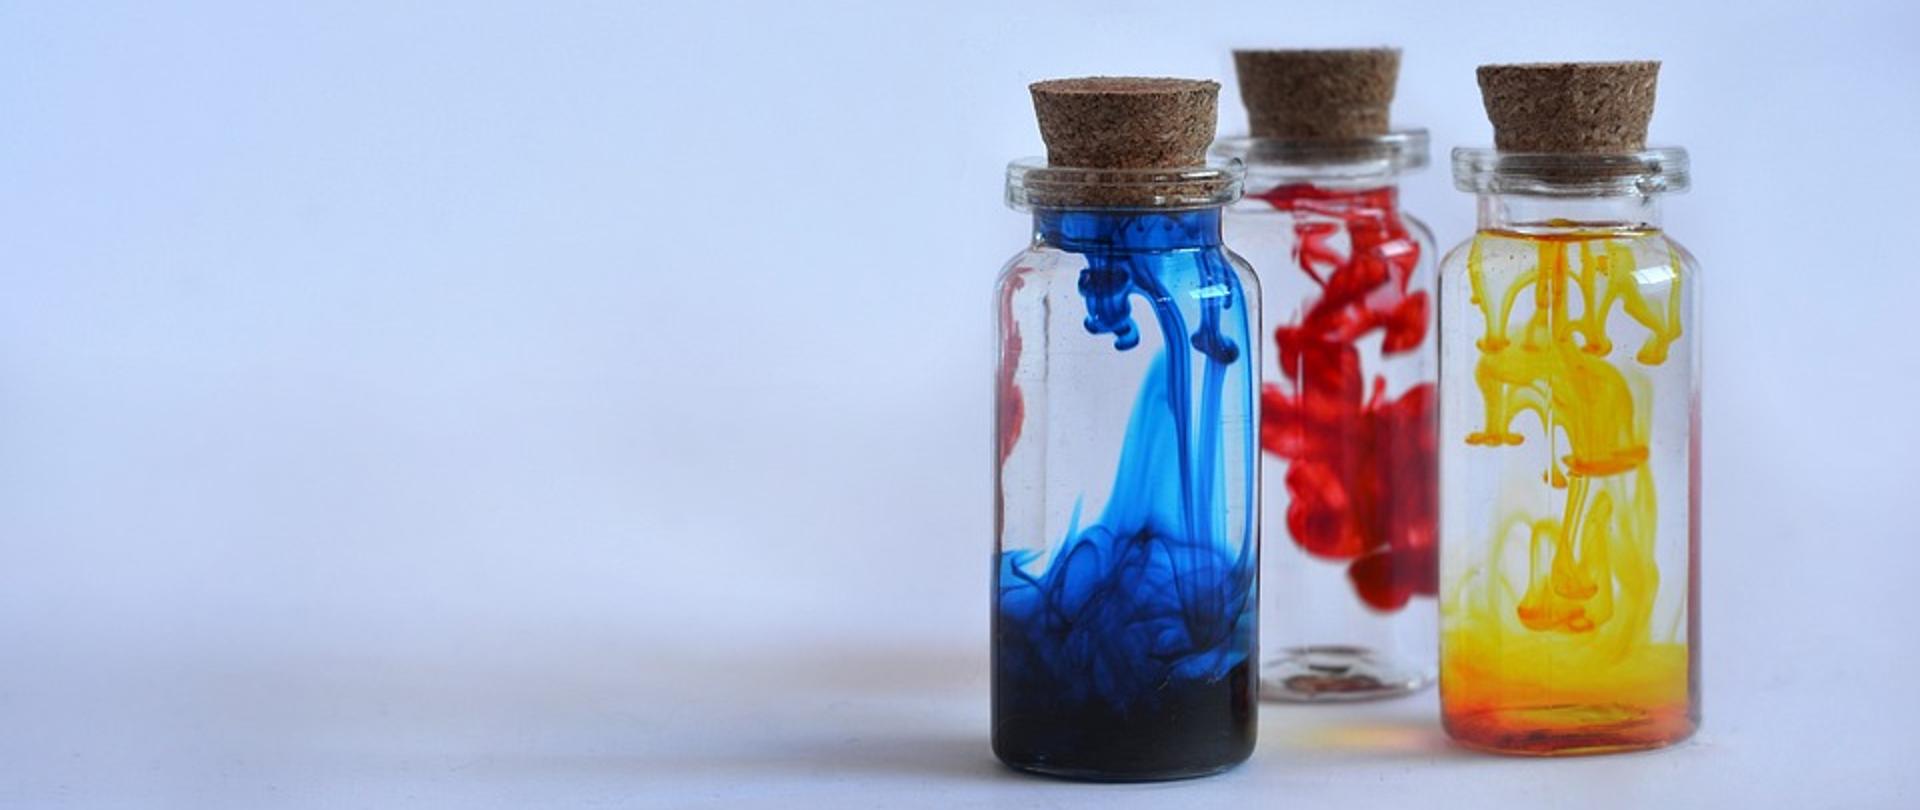 Trzy zakorkowane butelki z kolorową zawartością, z lewej strony z niebieskim płynem, w środku z czerwonym płynem, po prawej stronie z żółtym płynem